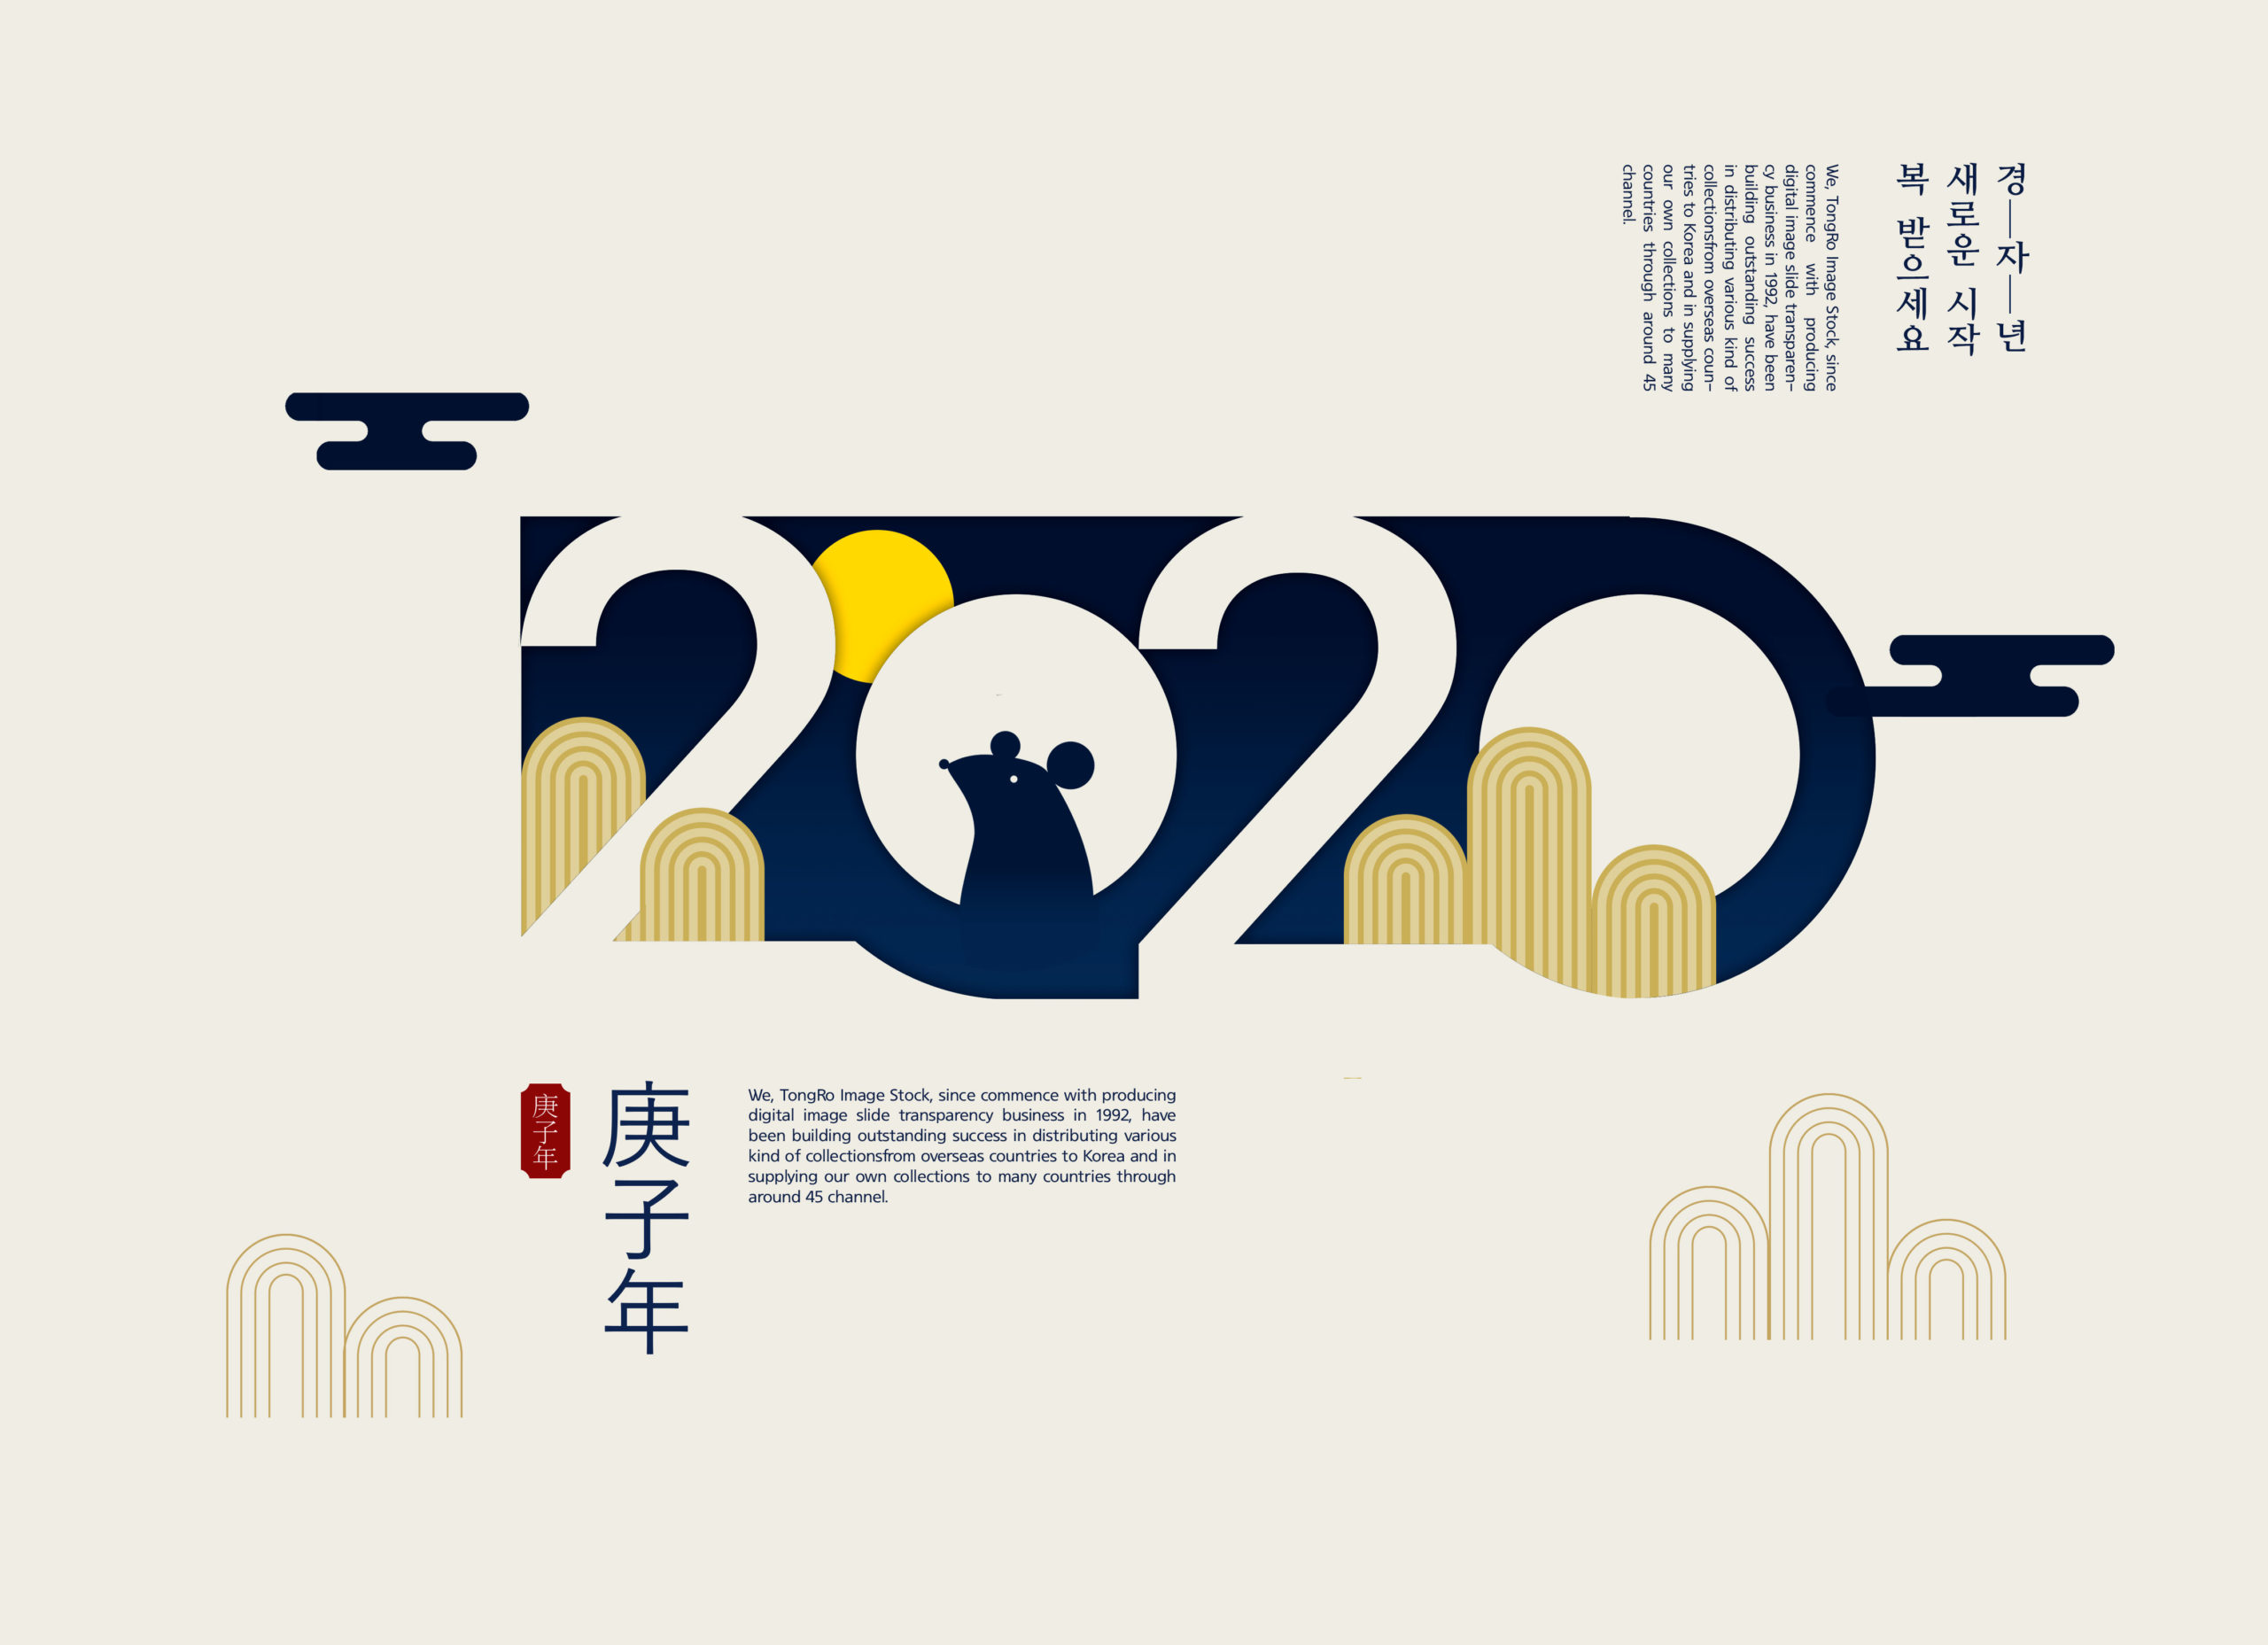 2020鼠年/庚子年海报PSD素材第一素材精选psd素材插图